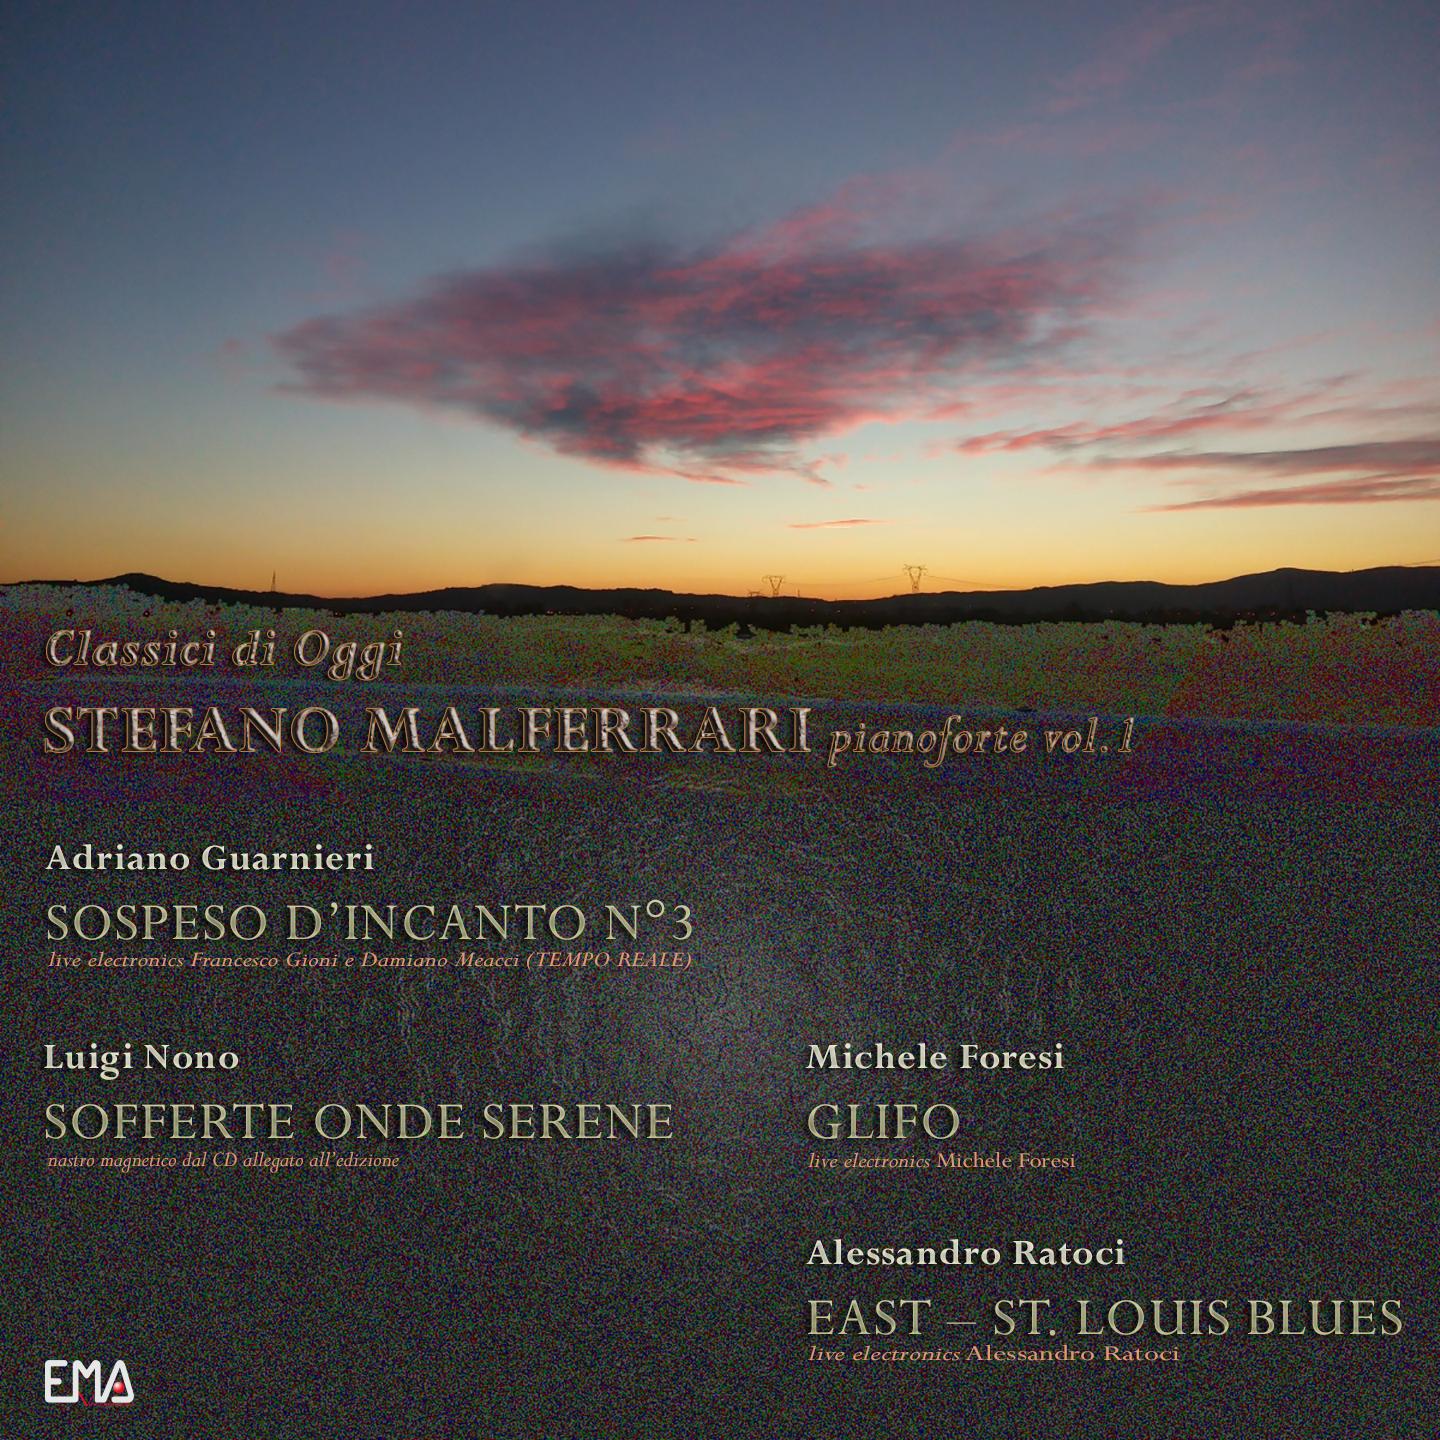 Stefano Malferrari - Sospeso d'incanto No. 3 (Live Electronics Tempo Reale)